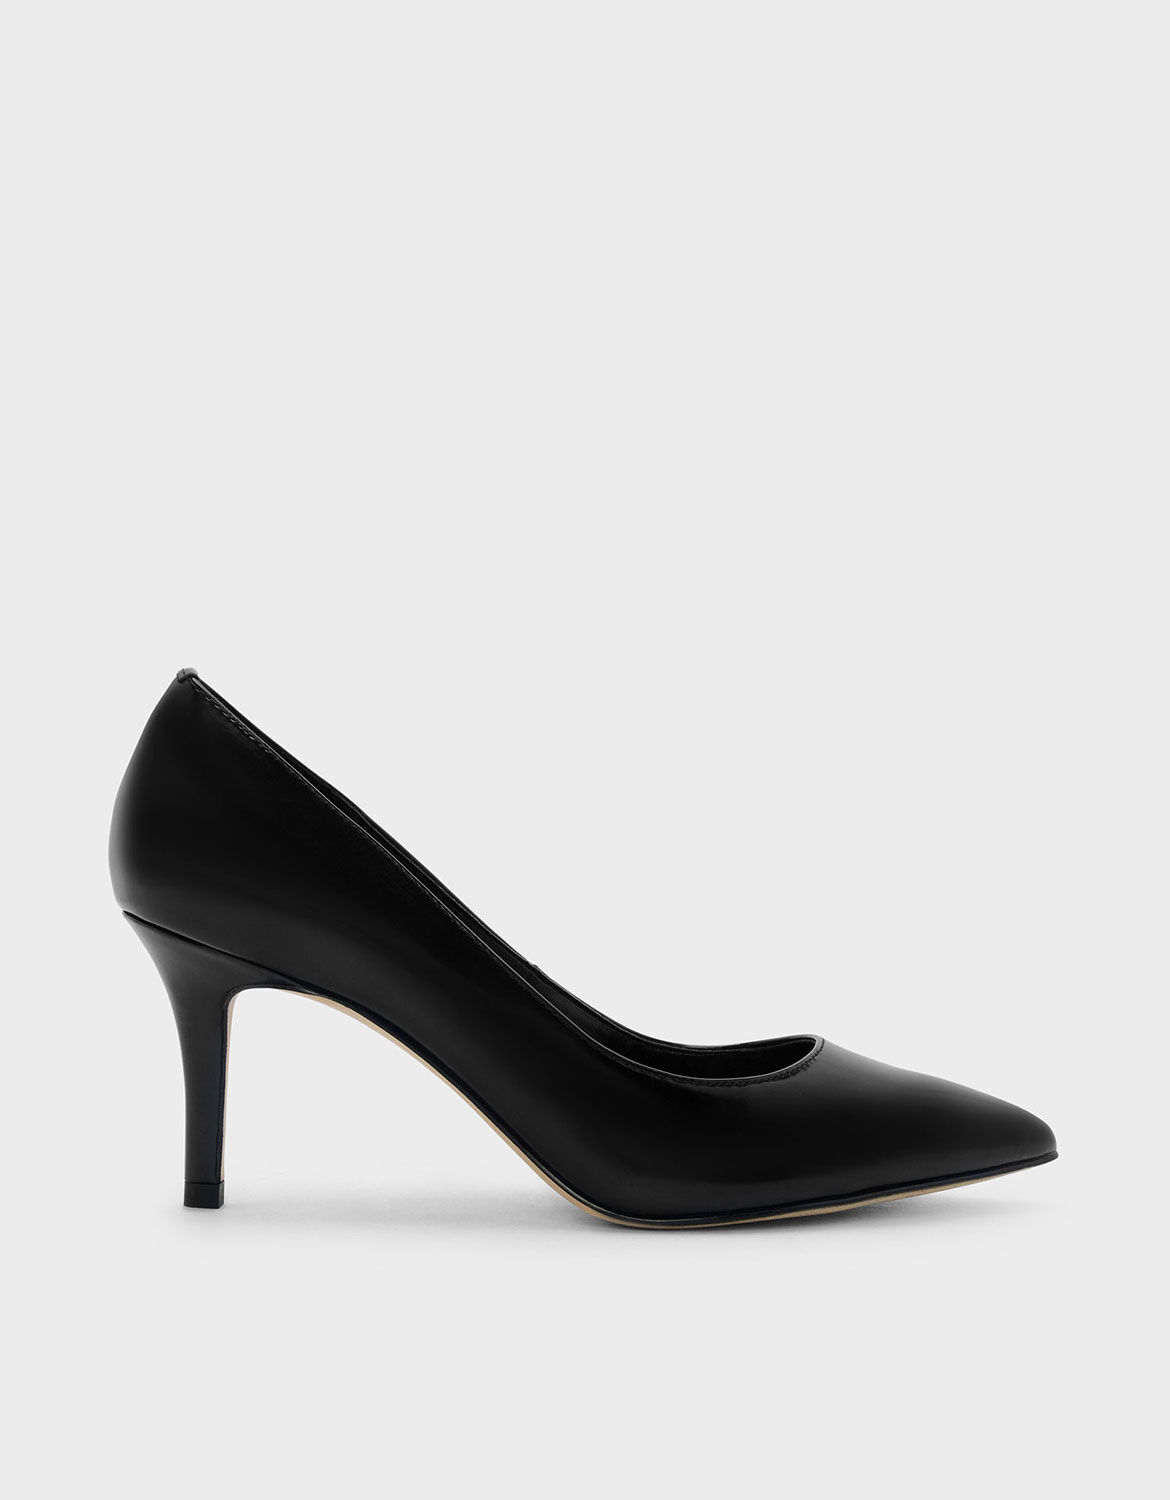 black pump shoe